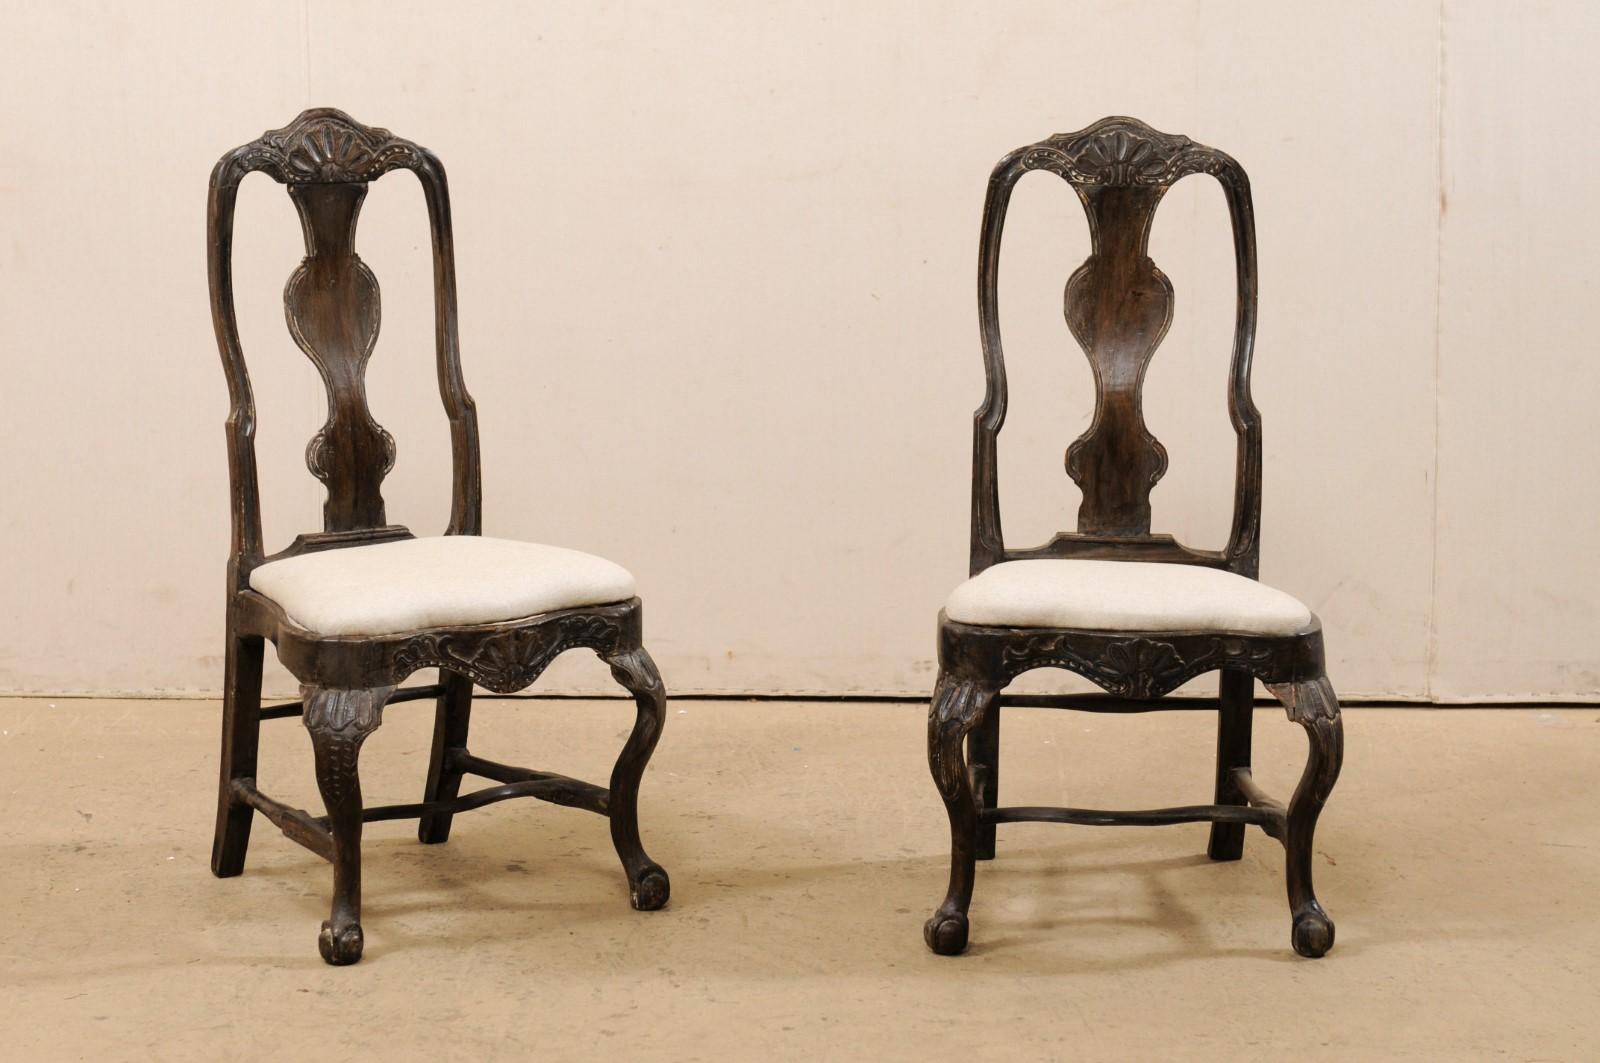 Ein schwedisches Paar geschnitzter Rokoko-Holzstühle aus dem 18. Jahrhundert. Dieses Paar antiker Stühle aus Schweden zeichnet sich durch Schnitzereien mit Muschelmotiven an der oberen Schiene und der vorderen mittleren Sitzschiene, geschwungene